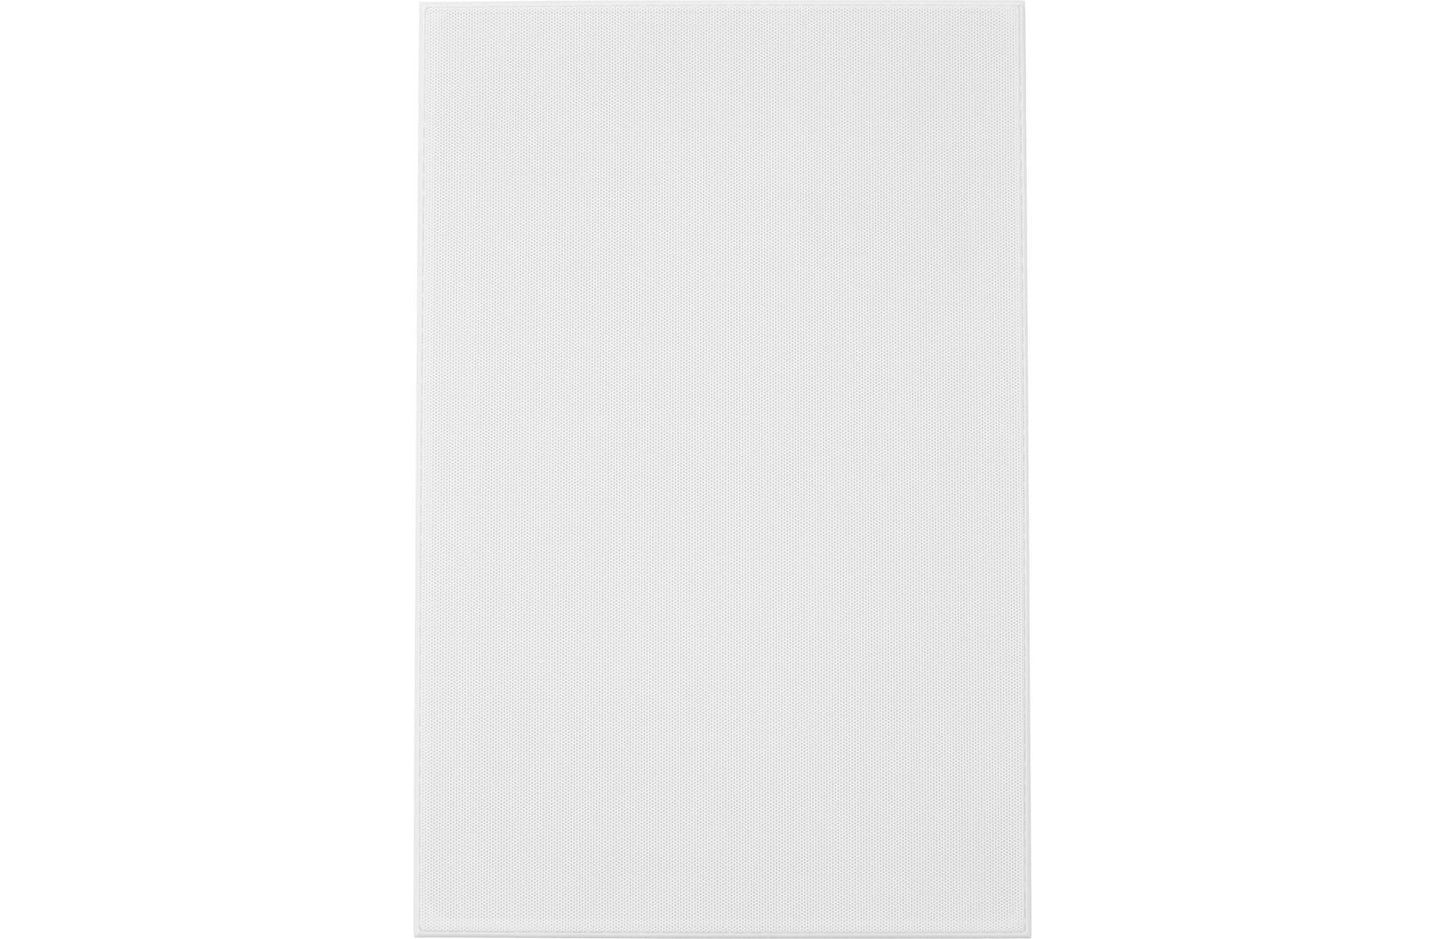 Klipsch R-3650-W II In-Wall Speaker - Each (White)